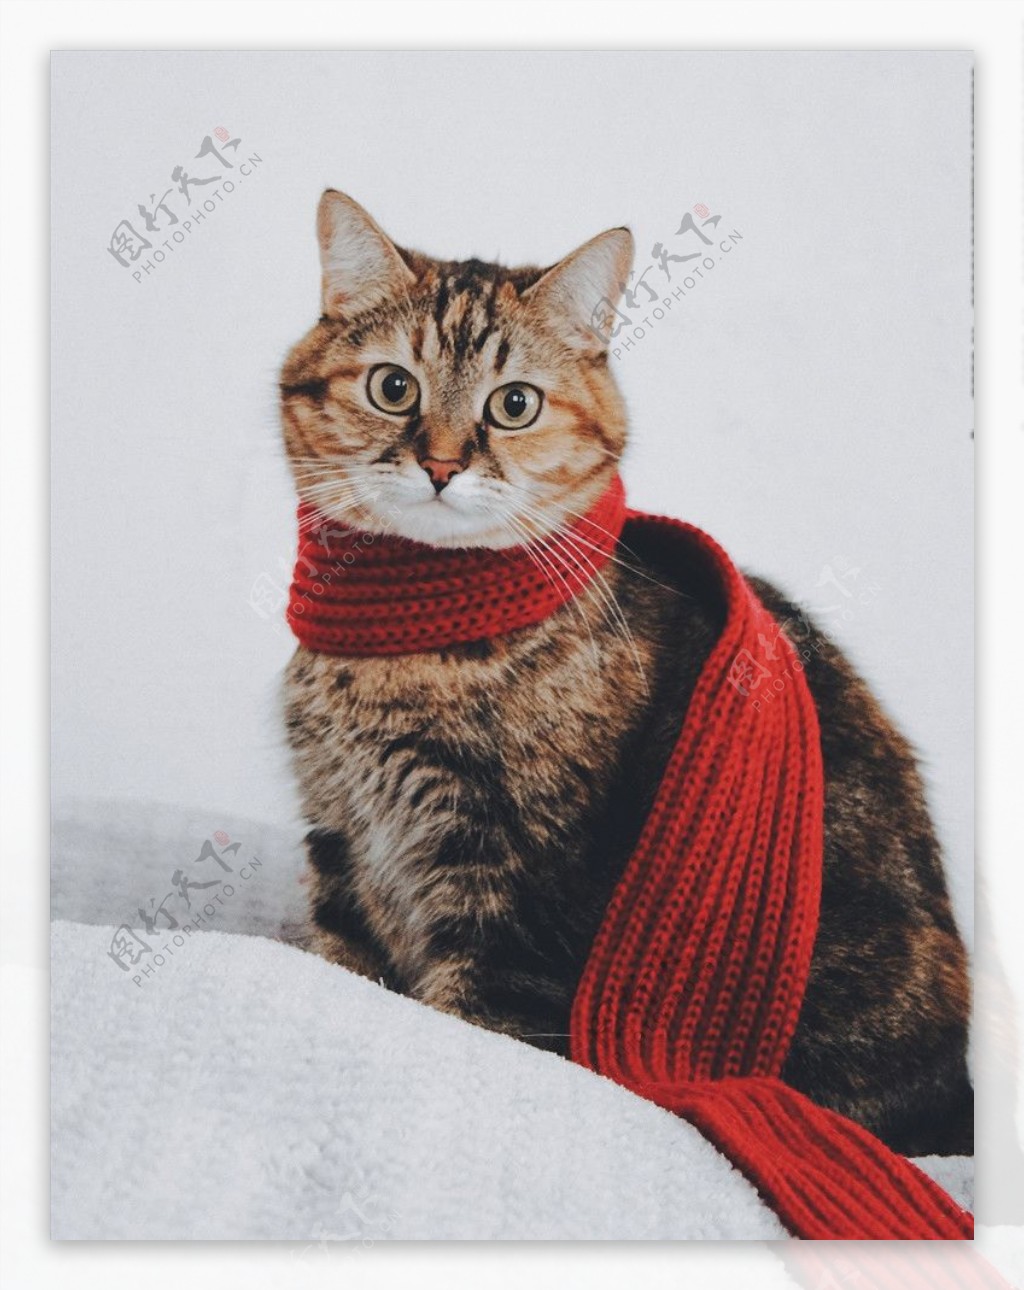 代红围巾的猫图片